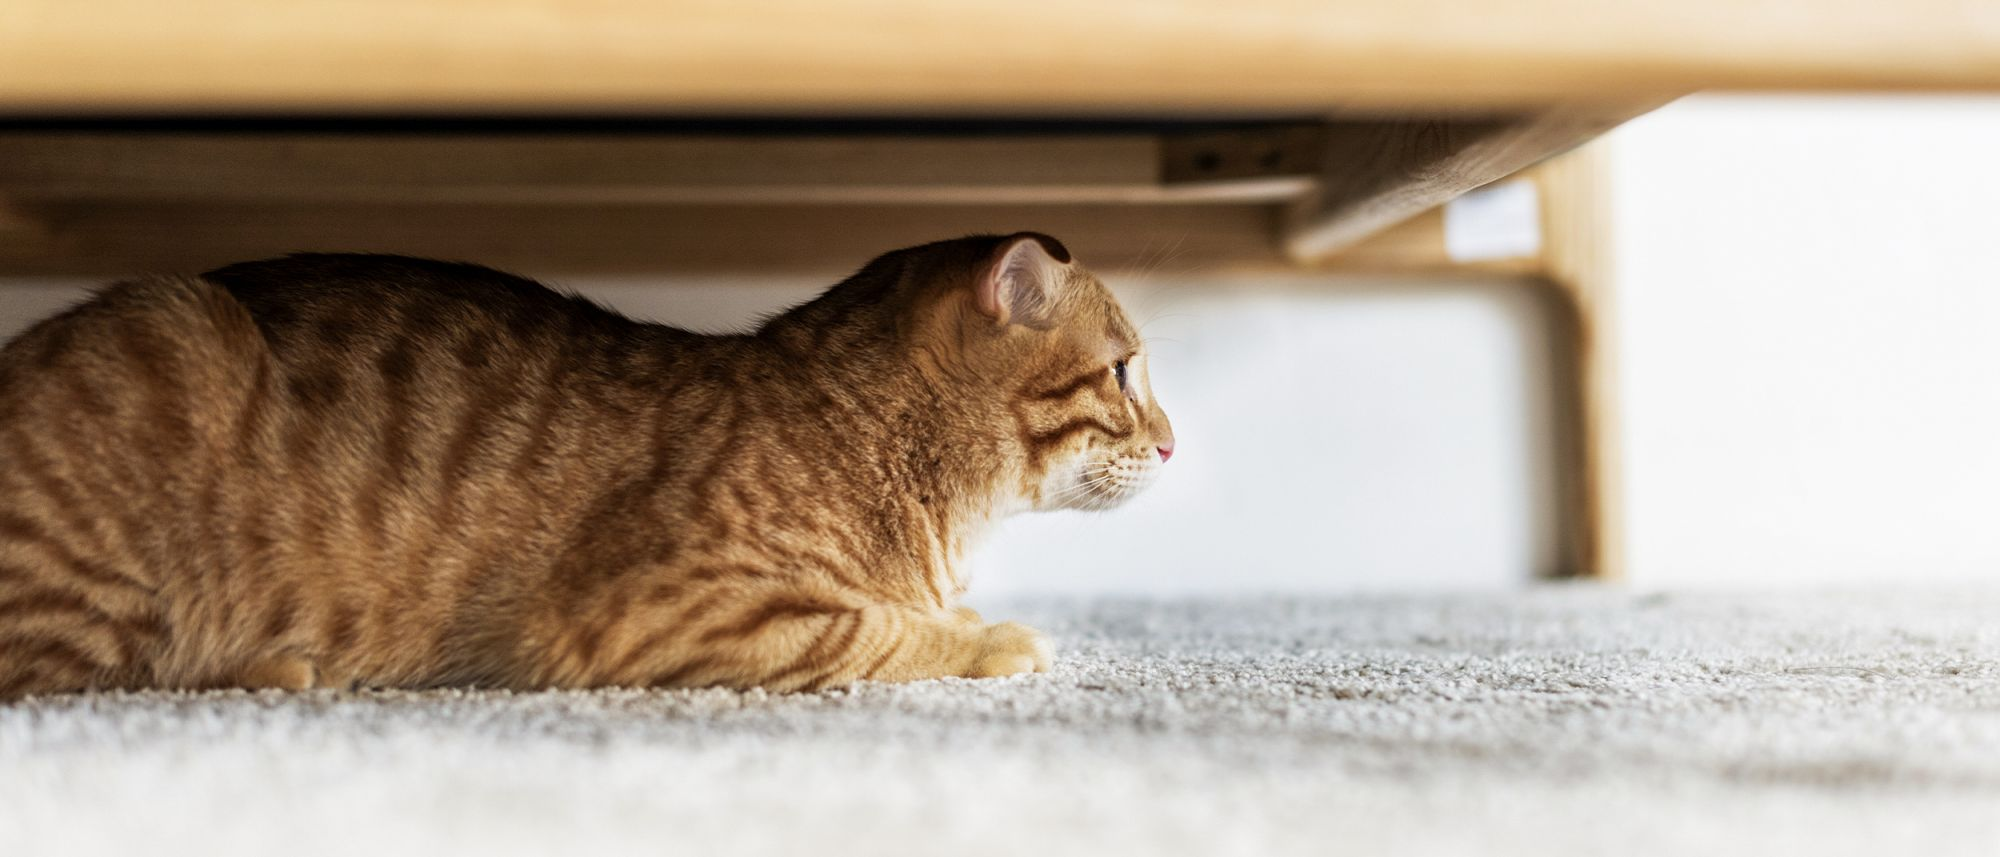 ängstliche Katze versteckt sich unter einem Möbel